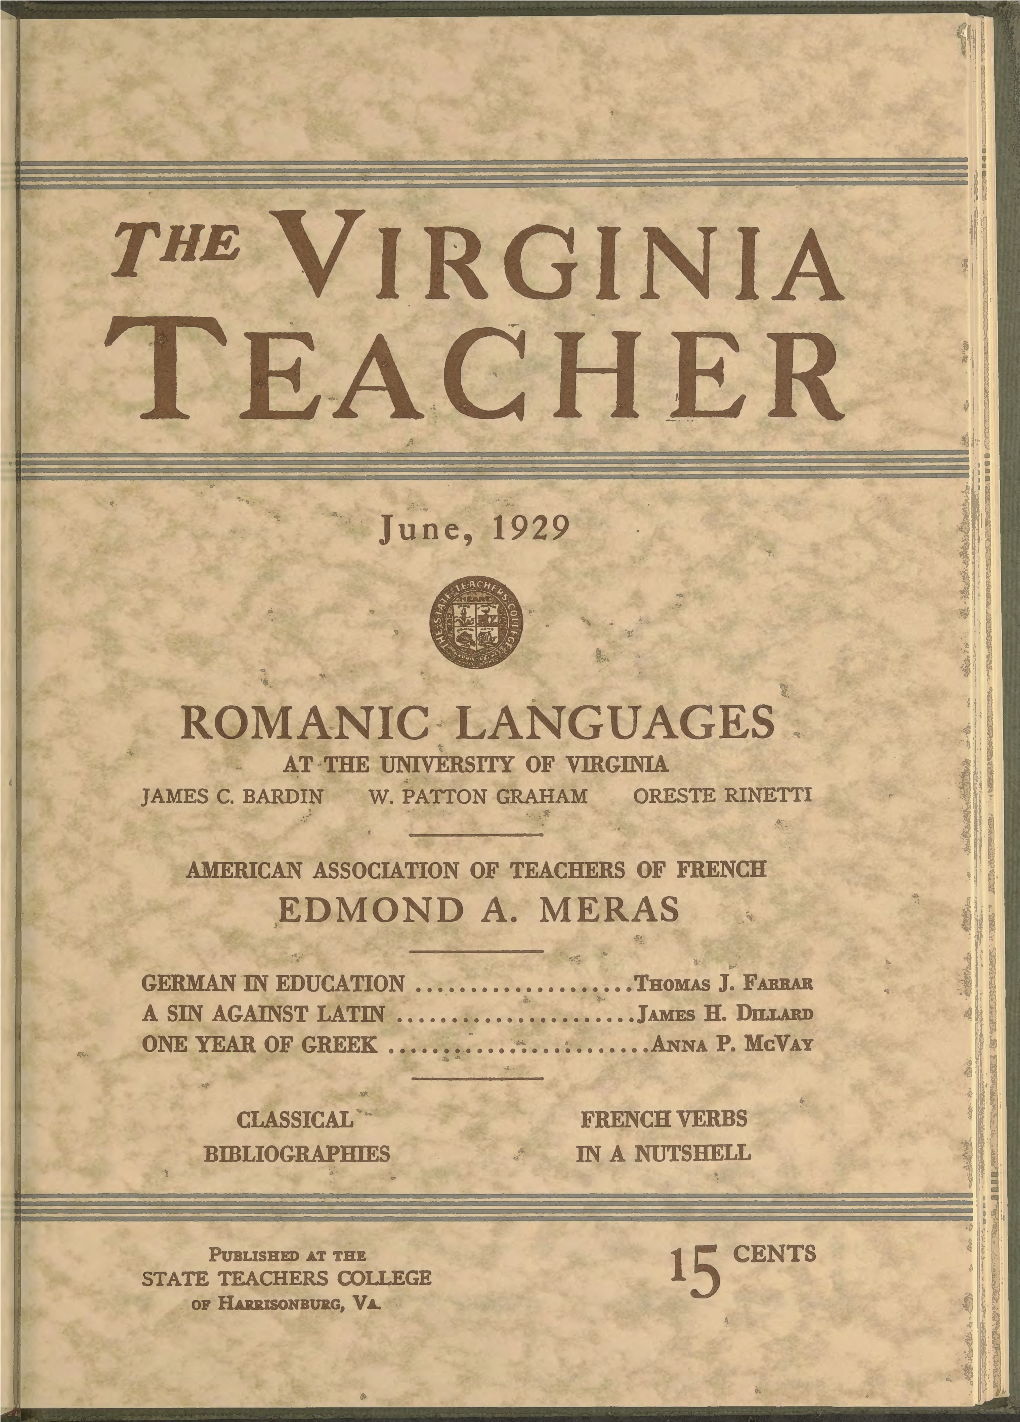 The Virginia Teacher, Vol. 10, Iss. 6, June 1929